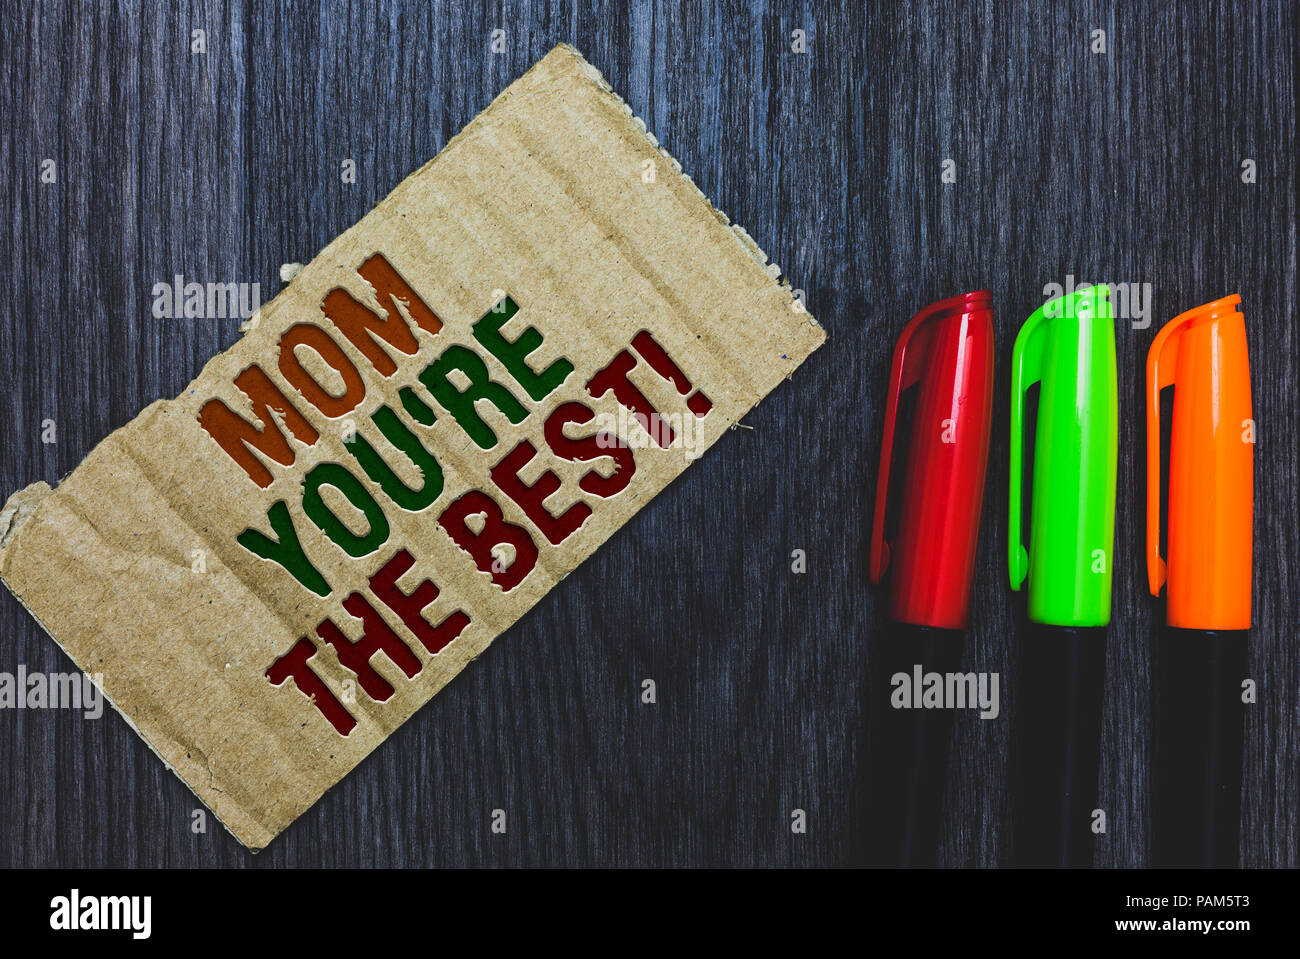 Schreiben Hinweis anzeigen Mama Sie sind die Besten. Business foto Präsentation Wertschätzung für ihre Mutter liebe Gefühle Kompliment Karton mit den Buchstaben o Stockfoto